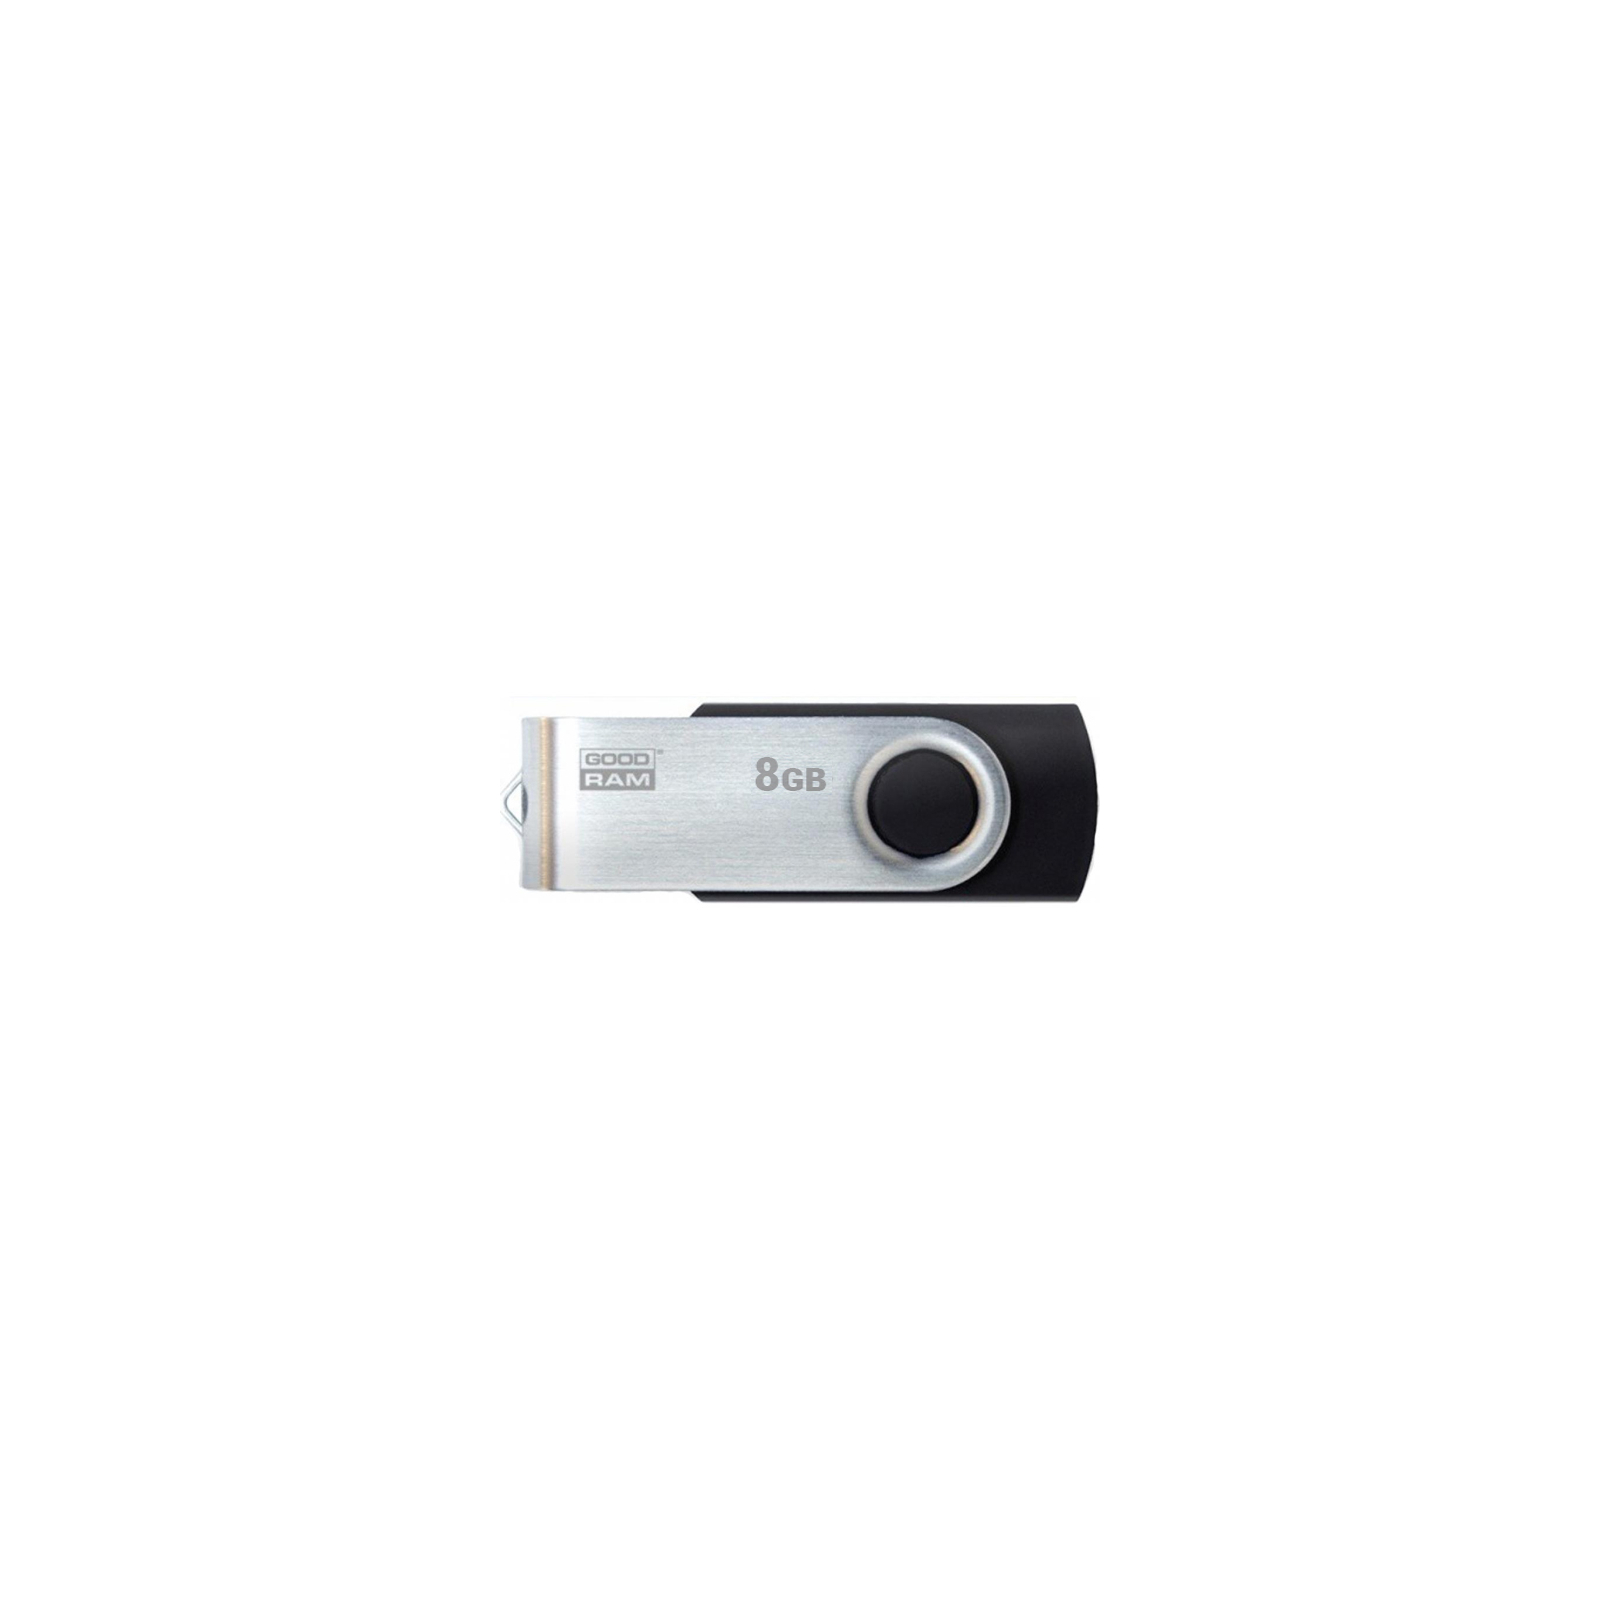 USB флеш накопитель Goodram 8GB UTS3 Twister Red USB 3.0 (UTS3-0080R0R11)